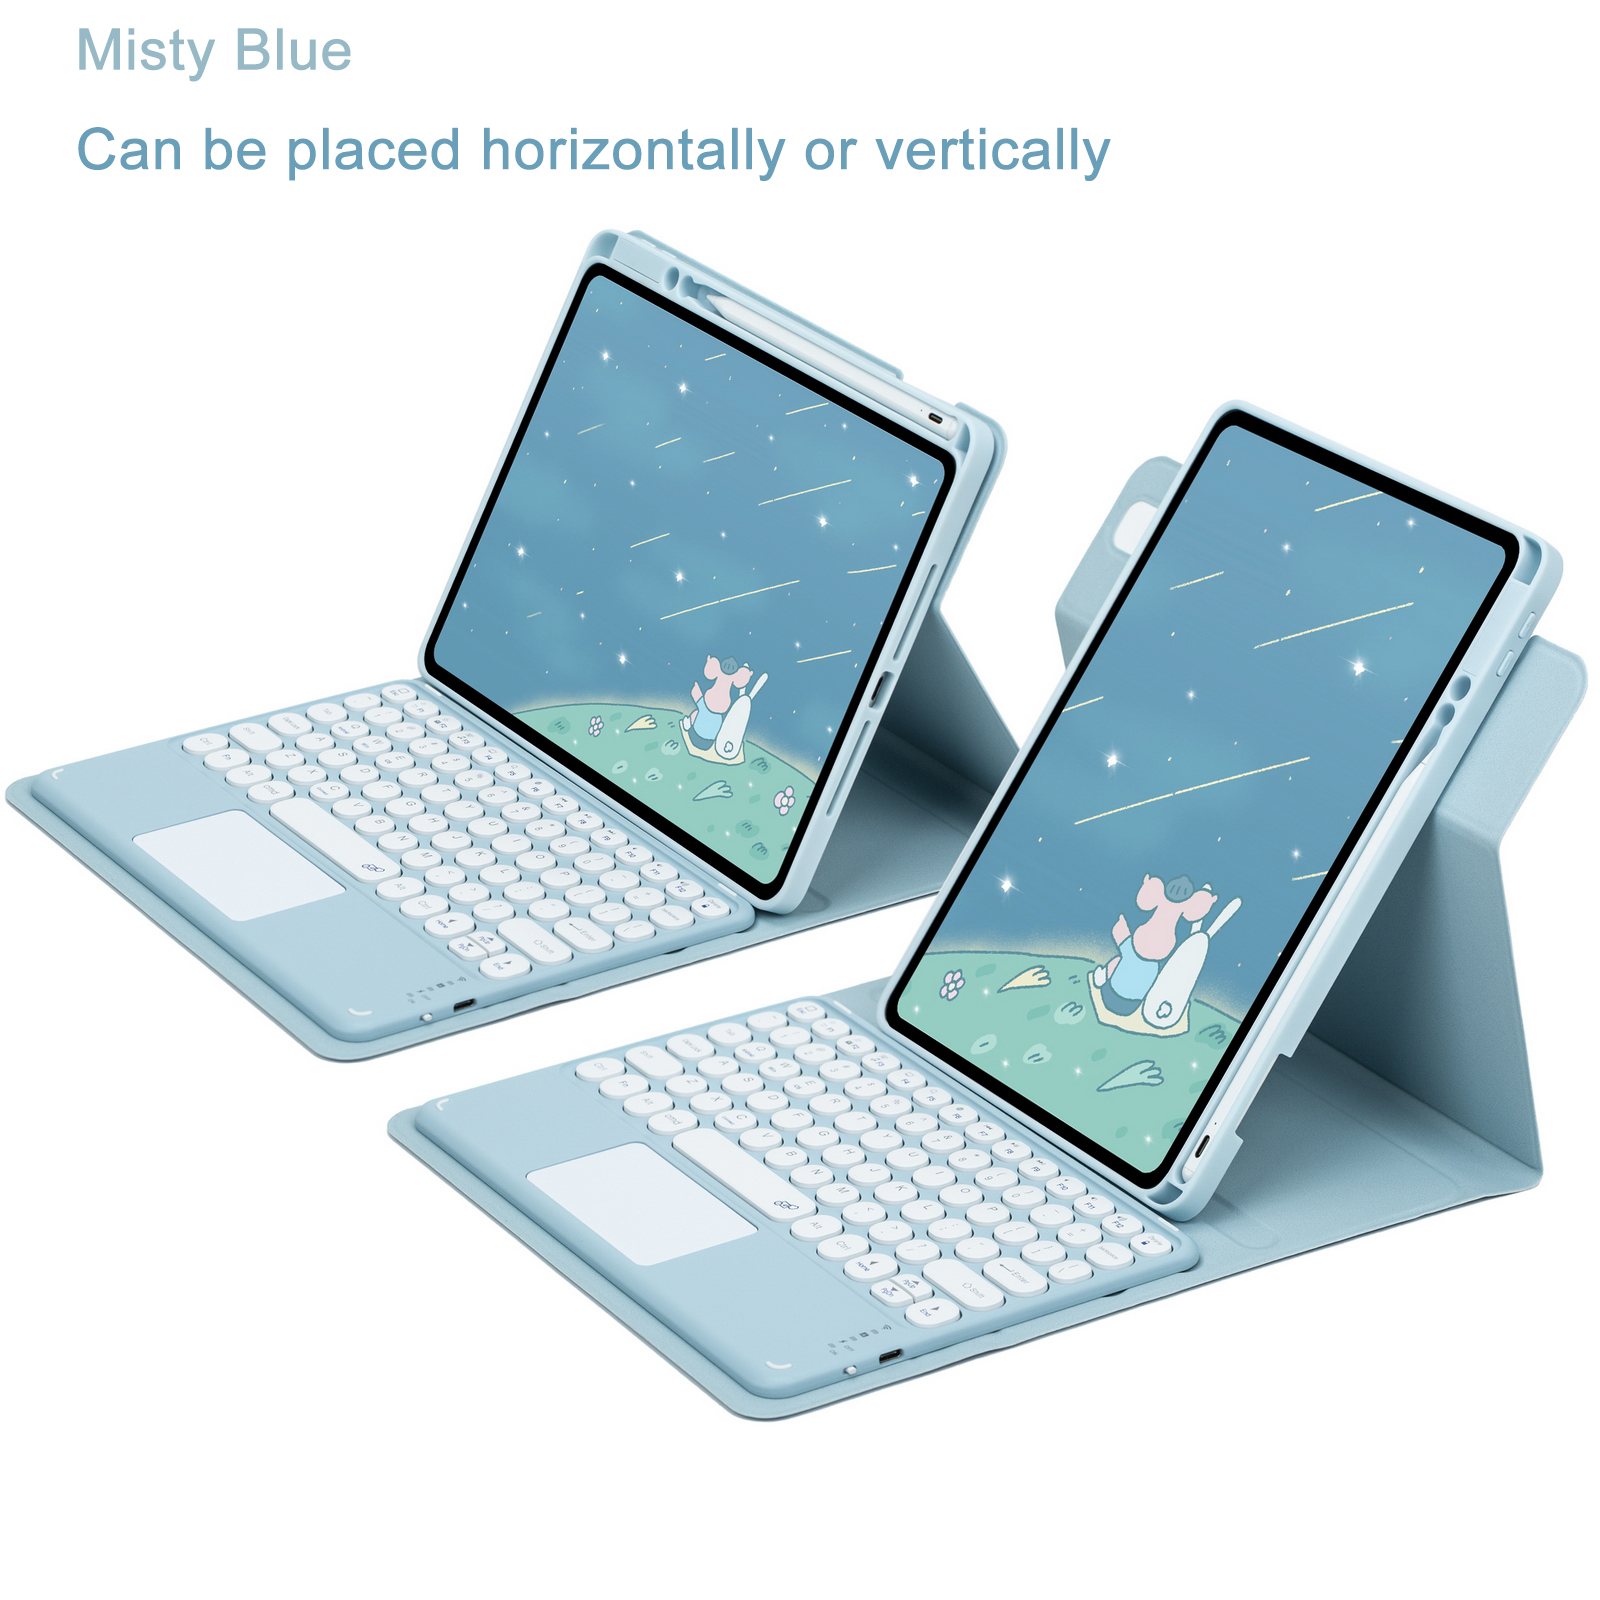 Étui clavier et souris RVB pour iPad 10,5 - Multifonctionnel